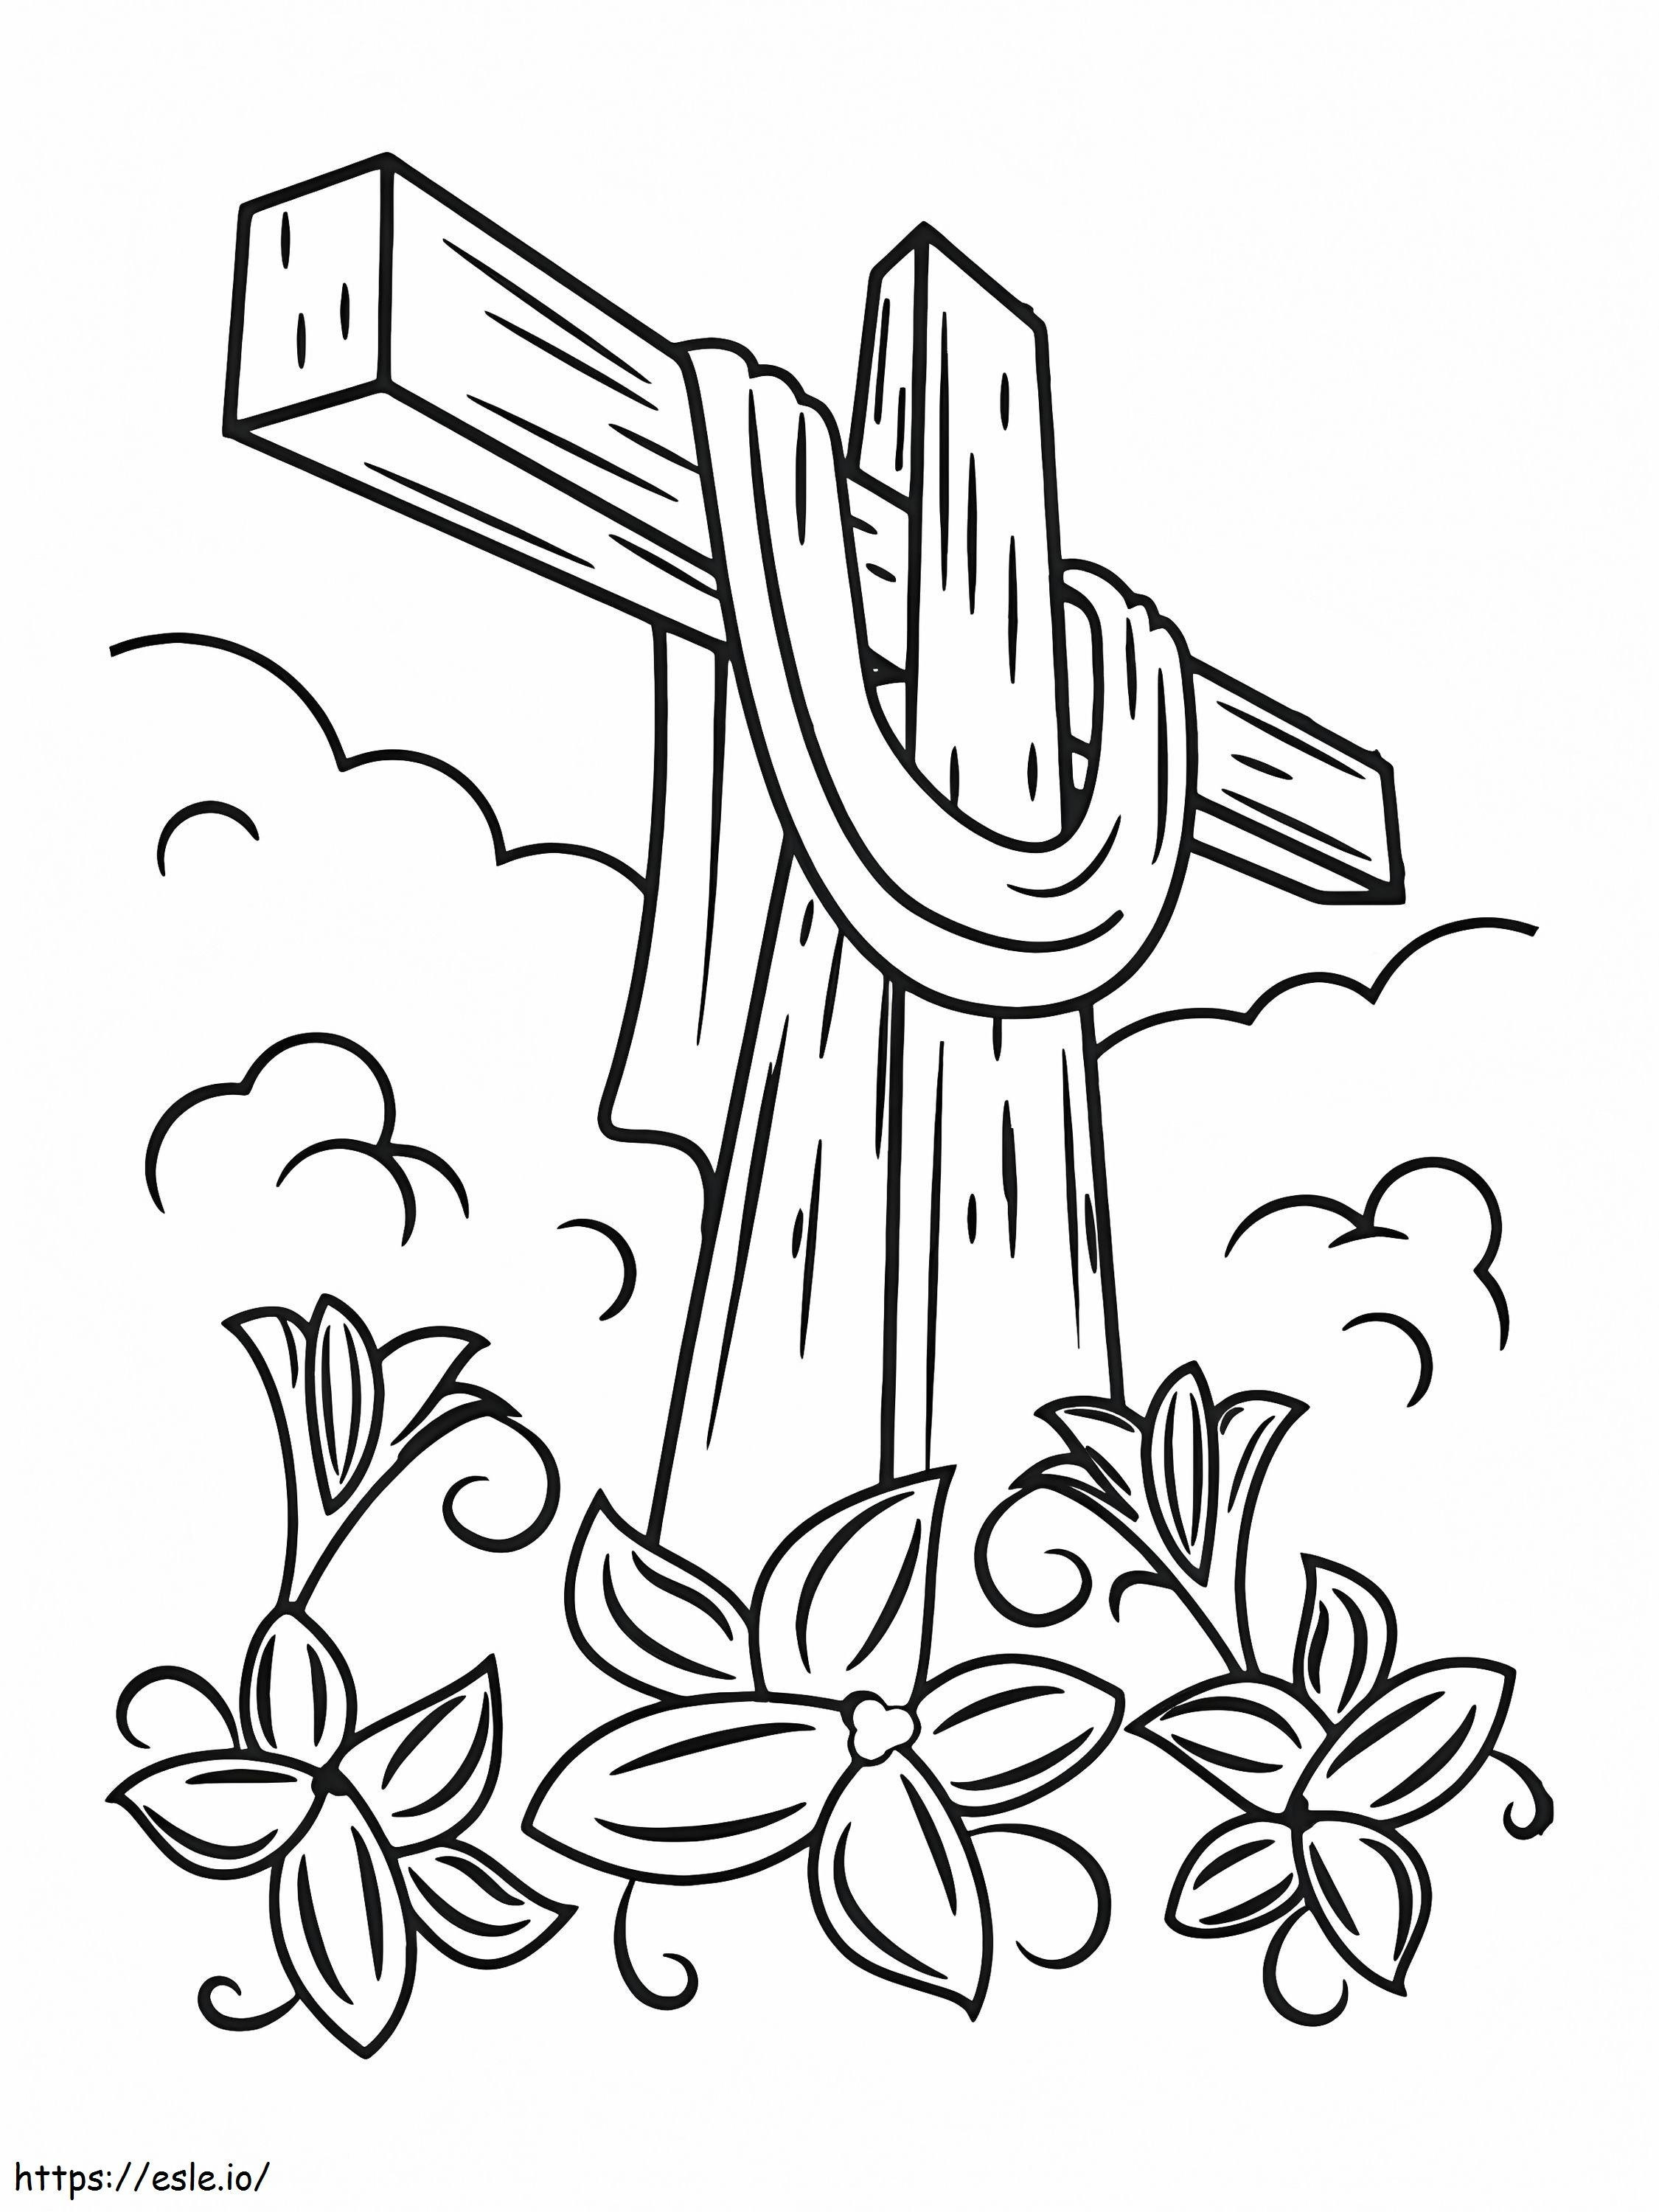 Ostern-Heiliges Kreuz ausmalbilder